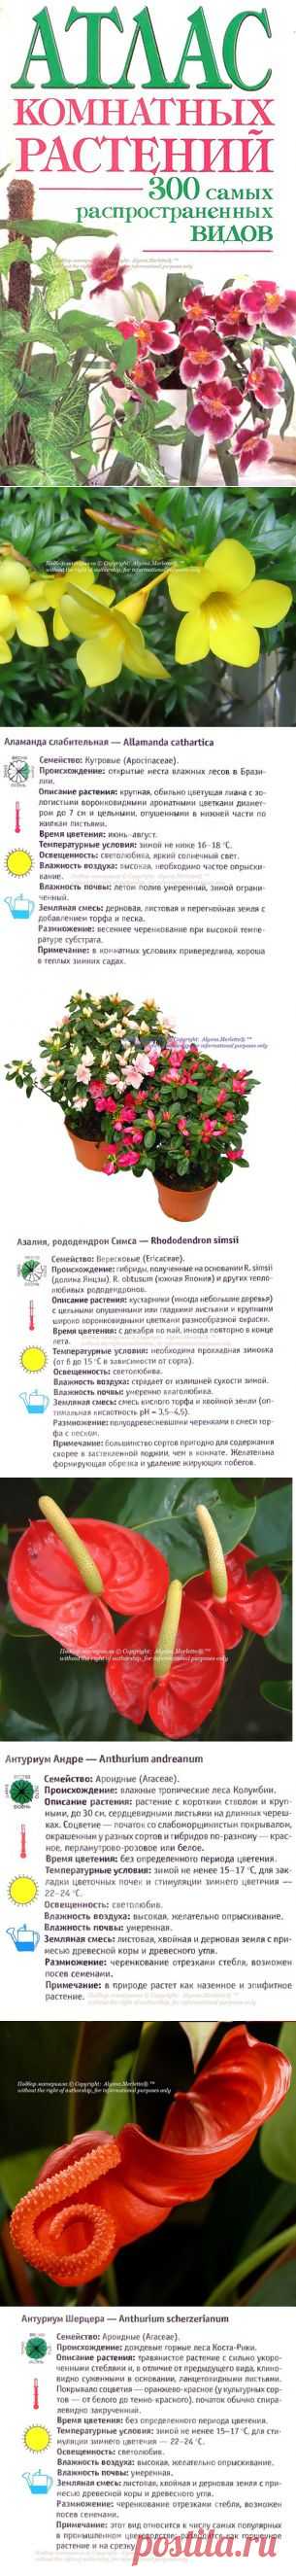 Красивоцветущие домашние растения на А ... Атлас комнатных растений (часть1)